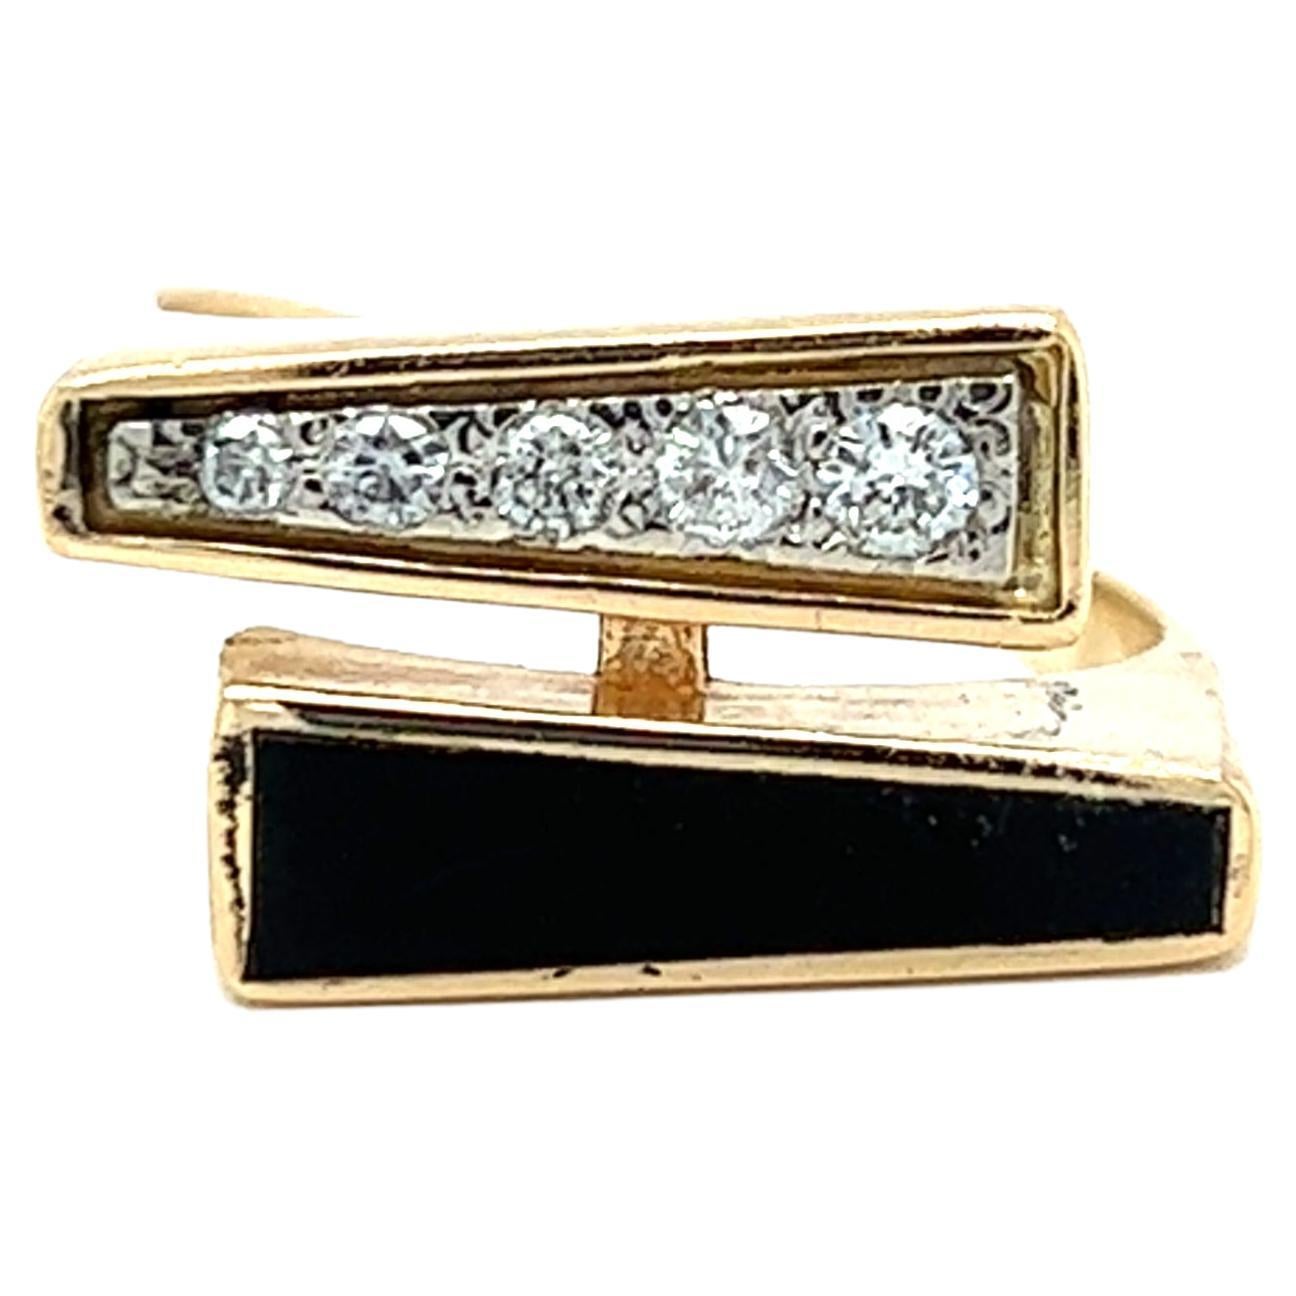 Ein 14 Karat Gelbgold Bypass-Design-Ring mit einer schwarzen Koralle verjüngt Baguette Tablette Messung 14,5x3,5 mm und fünf (5) runde Diamanten im Brillantschliff, etwa 0,10 Karat Gesamtgewicht mit passenden I / J Farbe und Si1 Klarheit. Der Ring